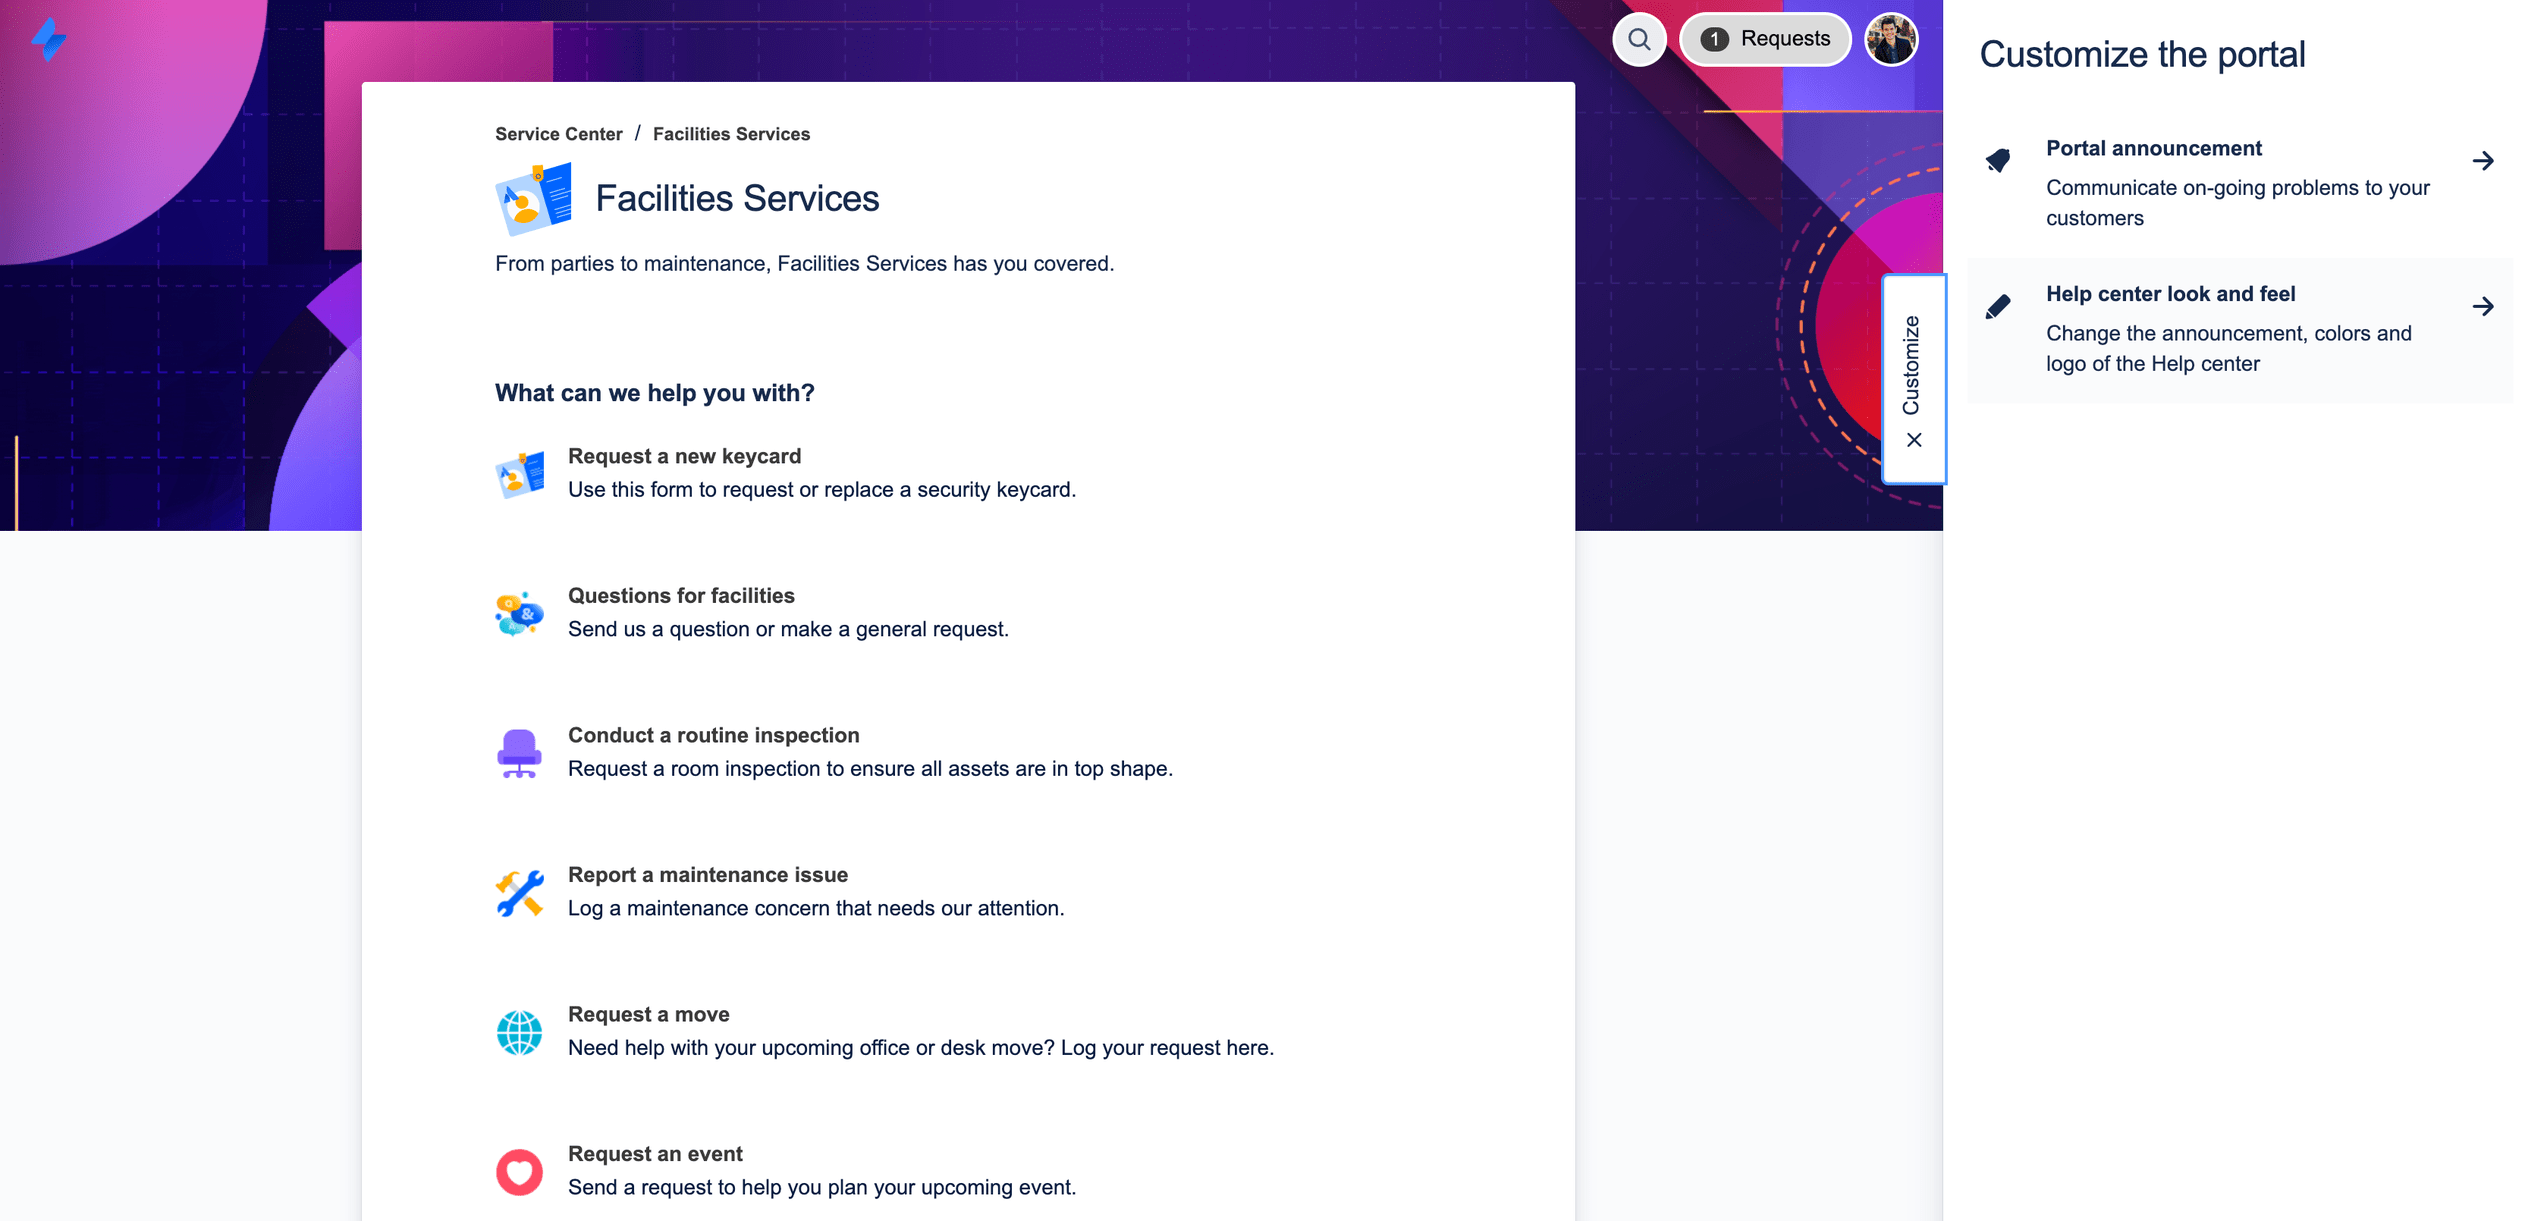 schermafbeelding van het kanaal voor facilitaire serviceaanvragen